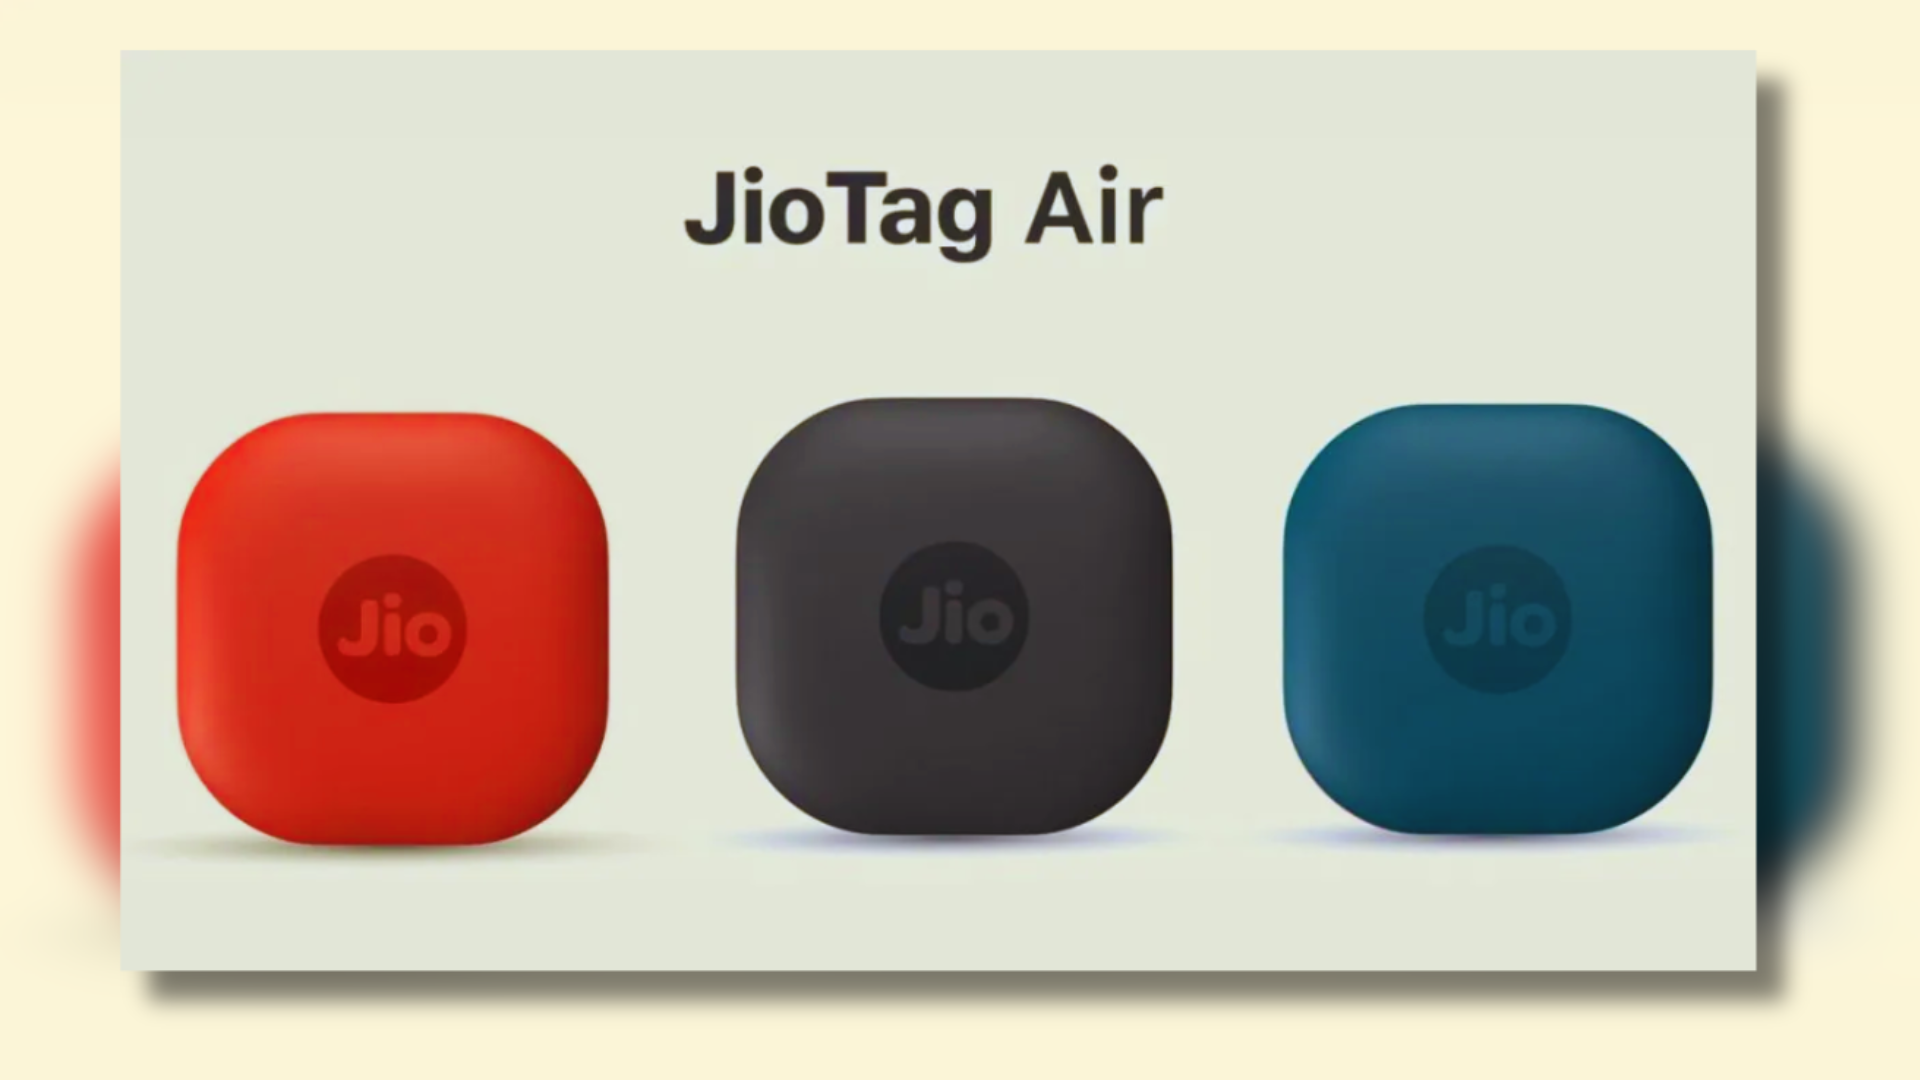 Meet JioTag Air: The Budget-Friendly Tracker Taking On Apple AirTags